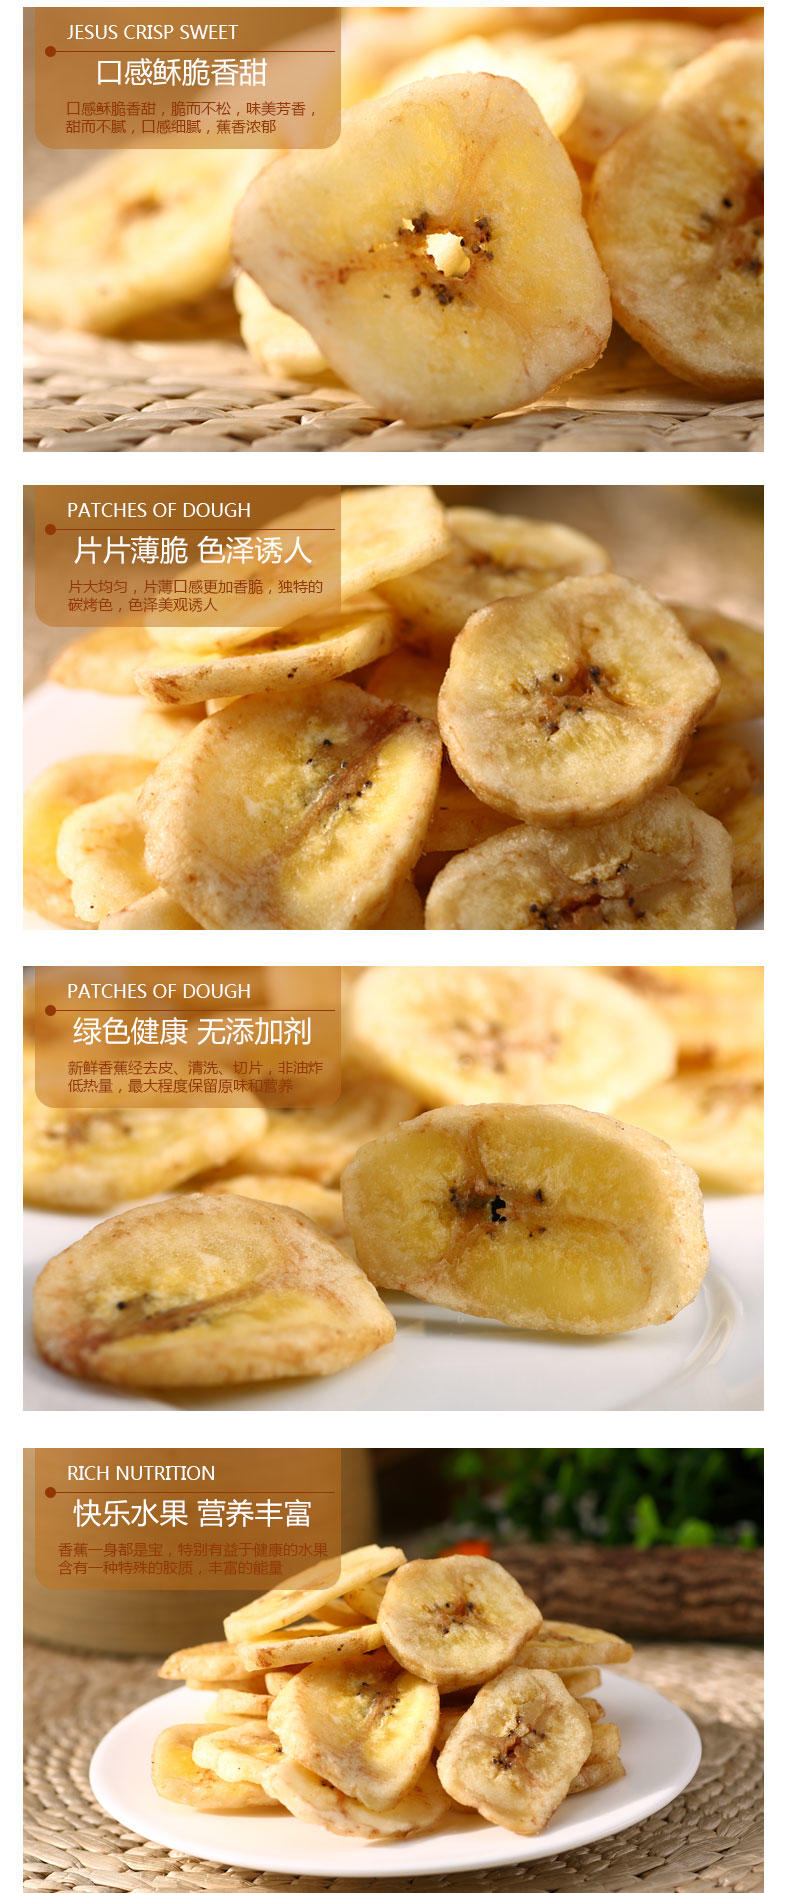 【促销中 心味果园】特级香蕉片158gx3袋香蕉干坚果干蜜饯果脯系列休闲食品零食